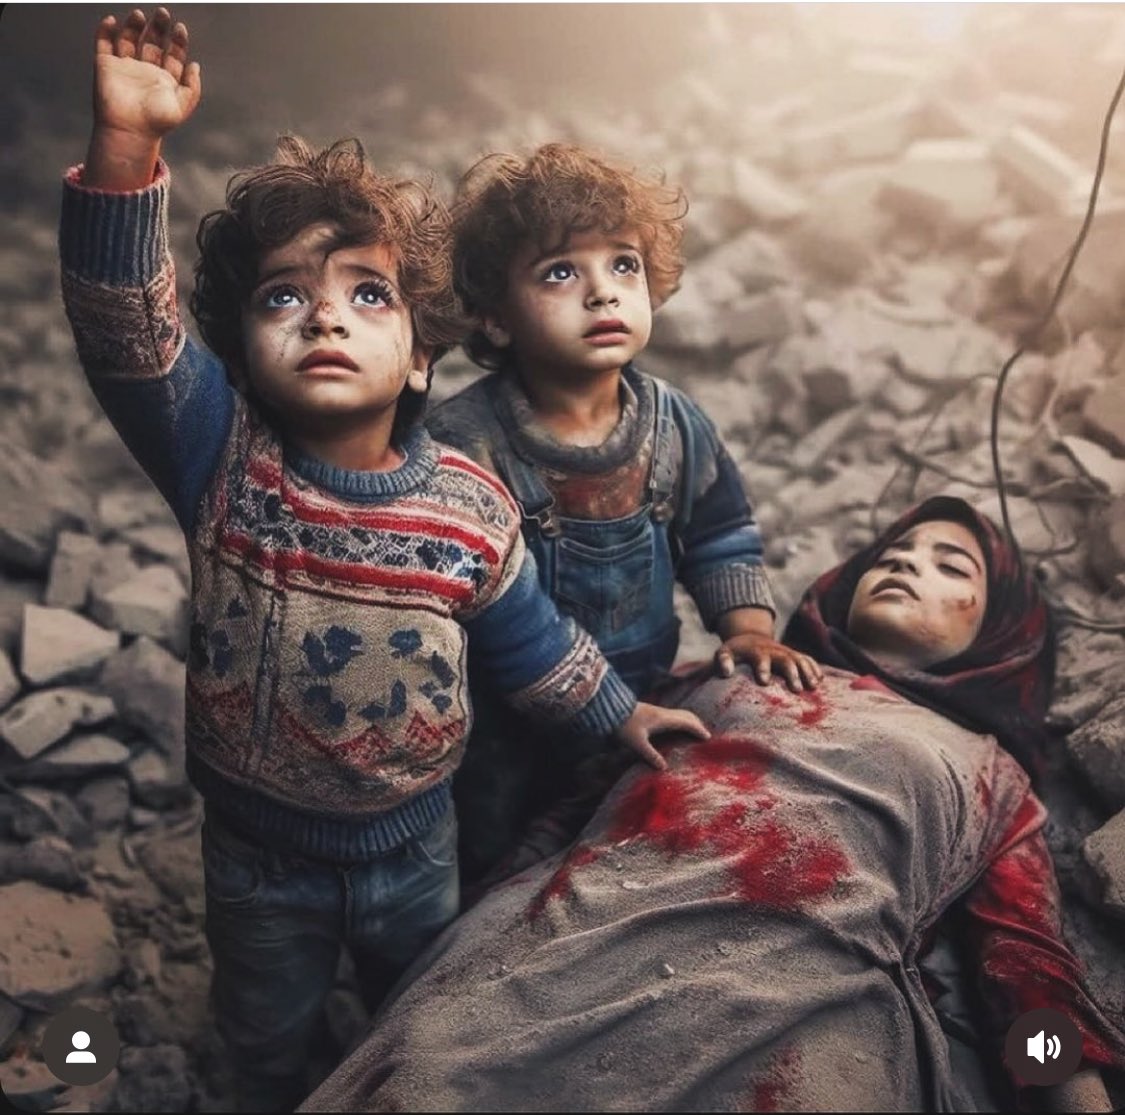 🤲🇵🇸Esselamualeykum
HayırLı sabahlar
Dostlar
Yeni haftamız umut olsun 
İnşALLAH
Âmin

Ümit varlıktan iyidir 
Kudüste Filistin Gazze’de
ne ümit kaldı ne de varLık
çocuk yaşta tüm ümitleri
güzellik ve hayalleri ellerinden alındı
zahiren yaşıyorLAr
manen ölüler

Rabb’imGalipEyle🇵🇸🤲